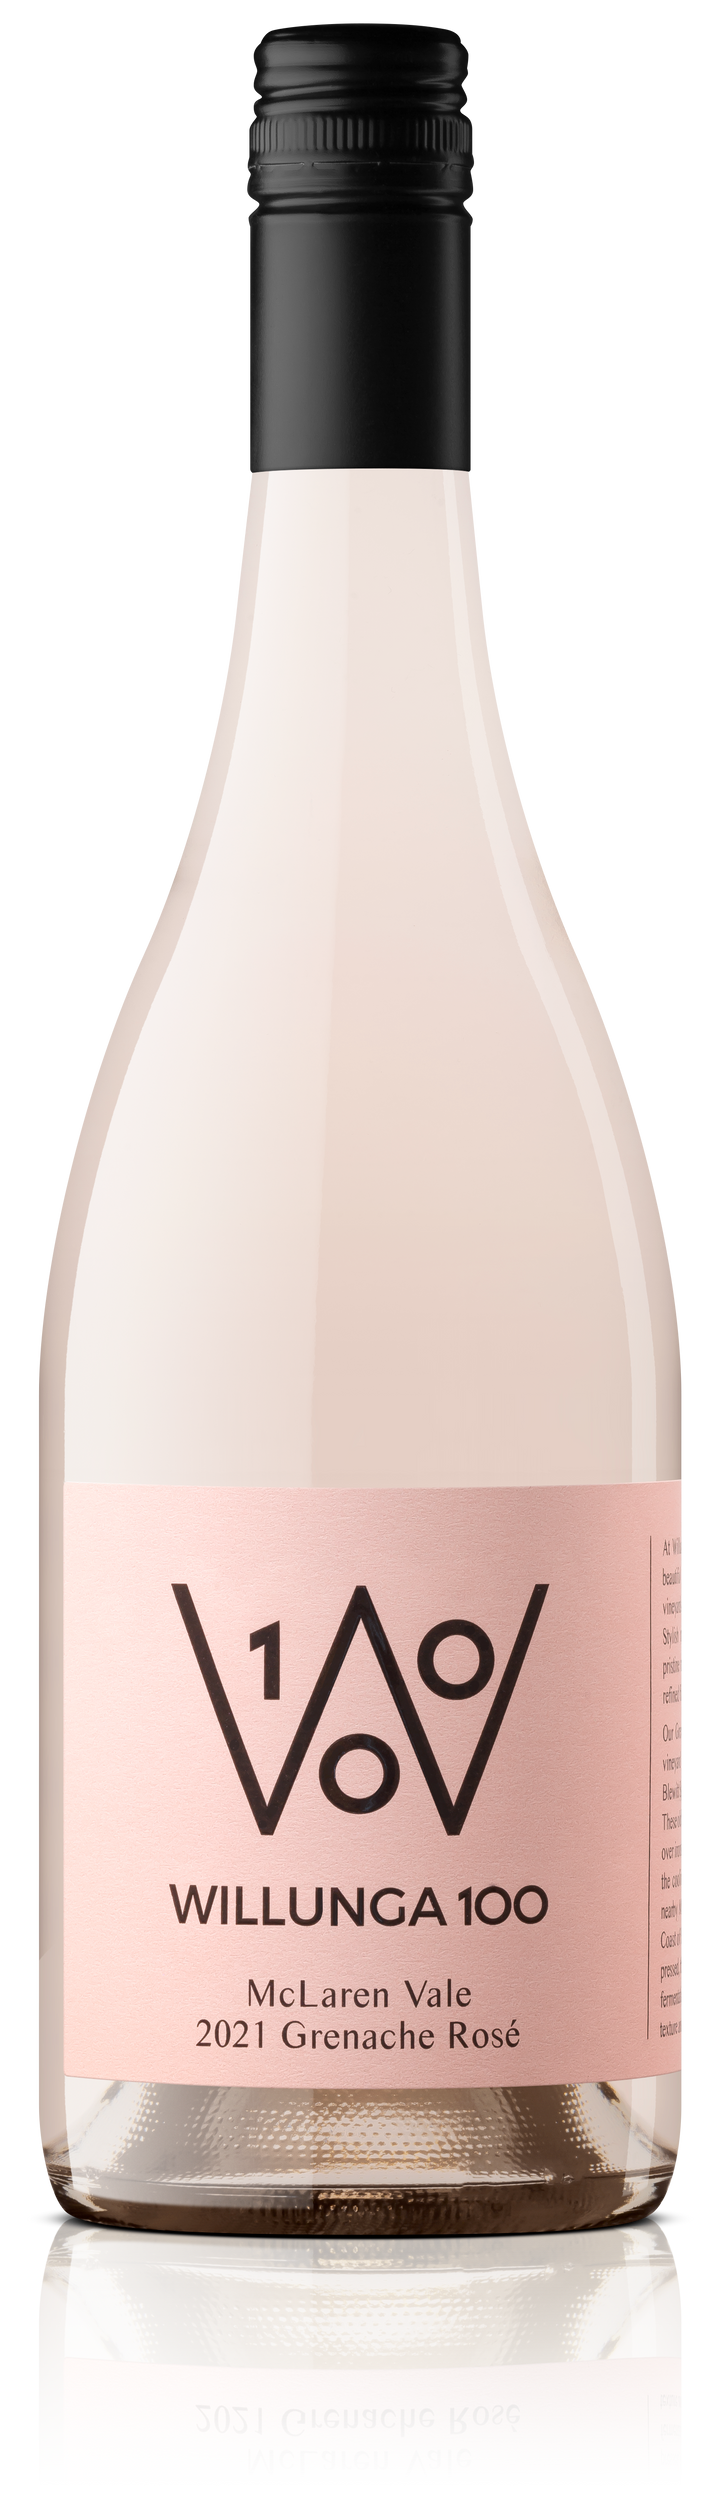 Willunga 100 Grenache Rosé 2021 - Liquid Courage